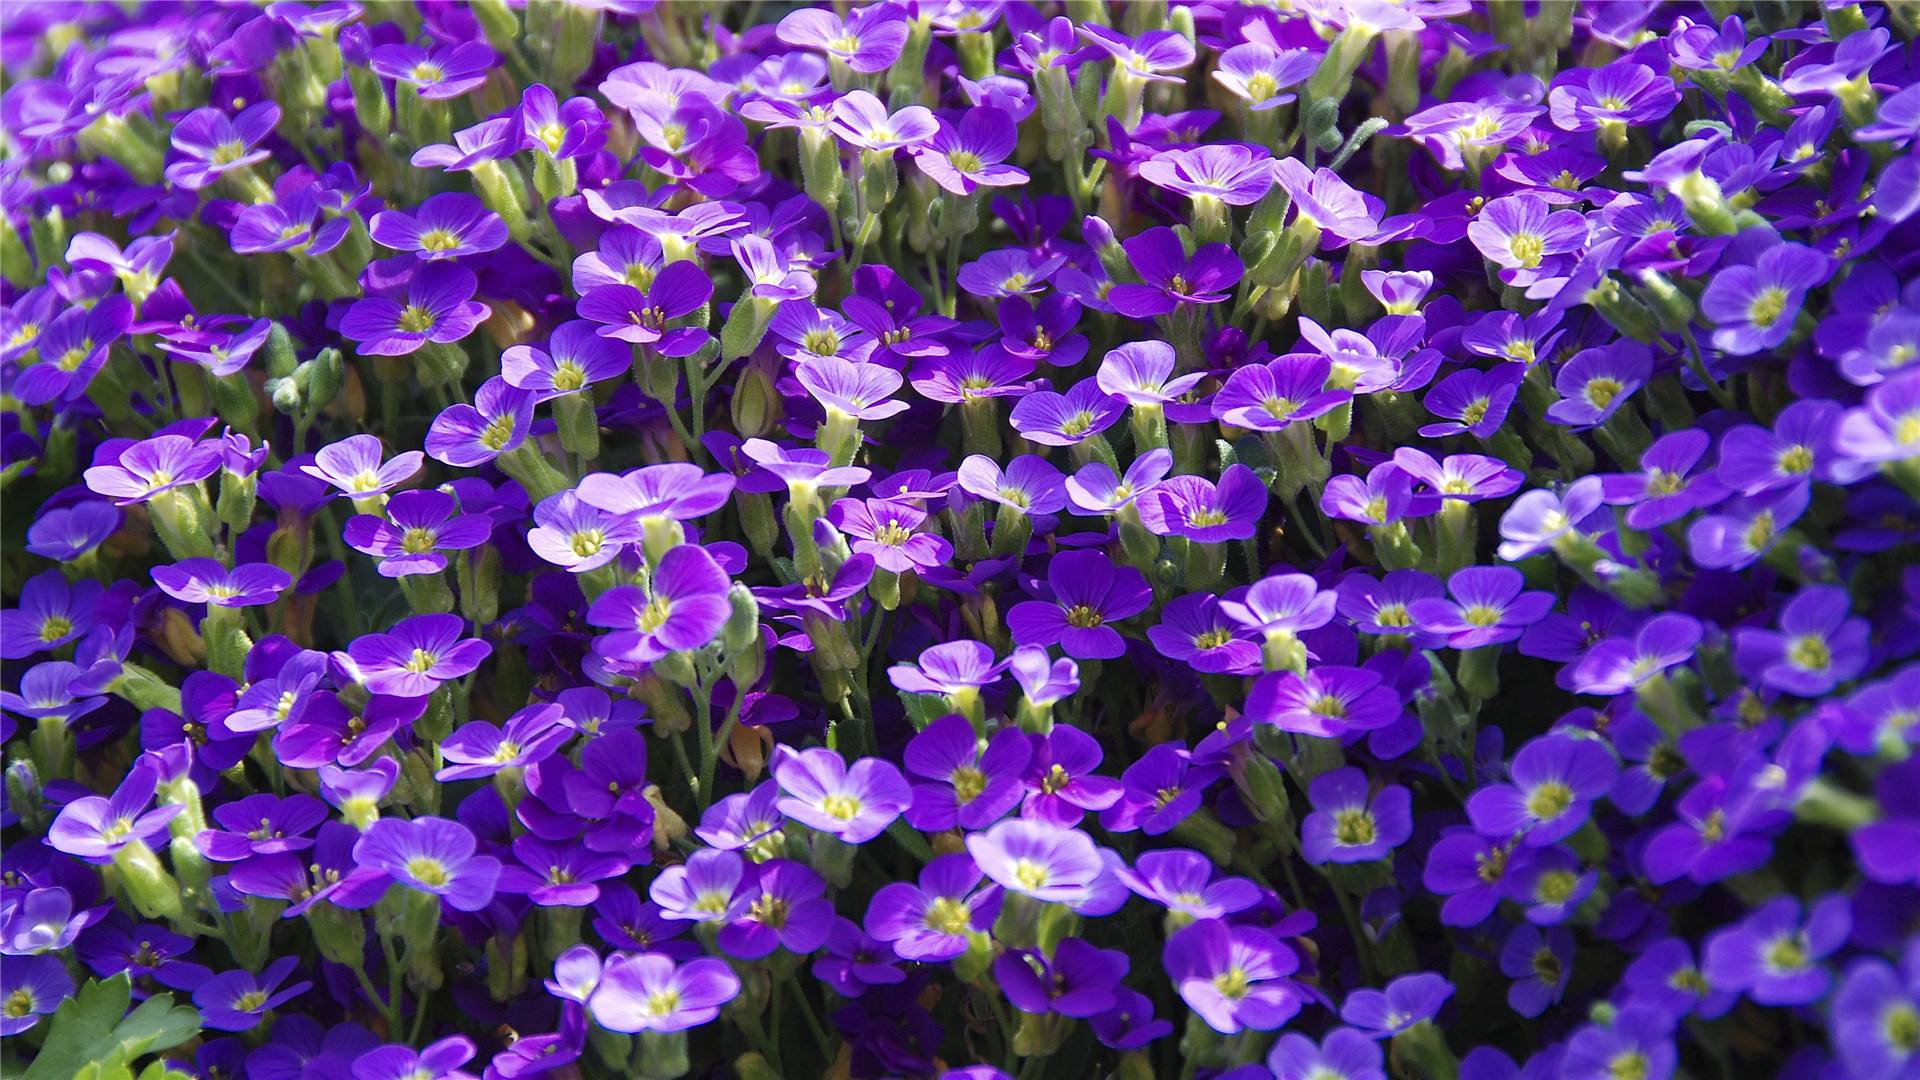 紫薇花烂根最好的处理方法
,紫薇花烂根最好的处理方法是什么